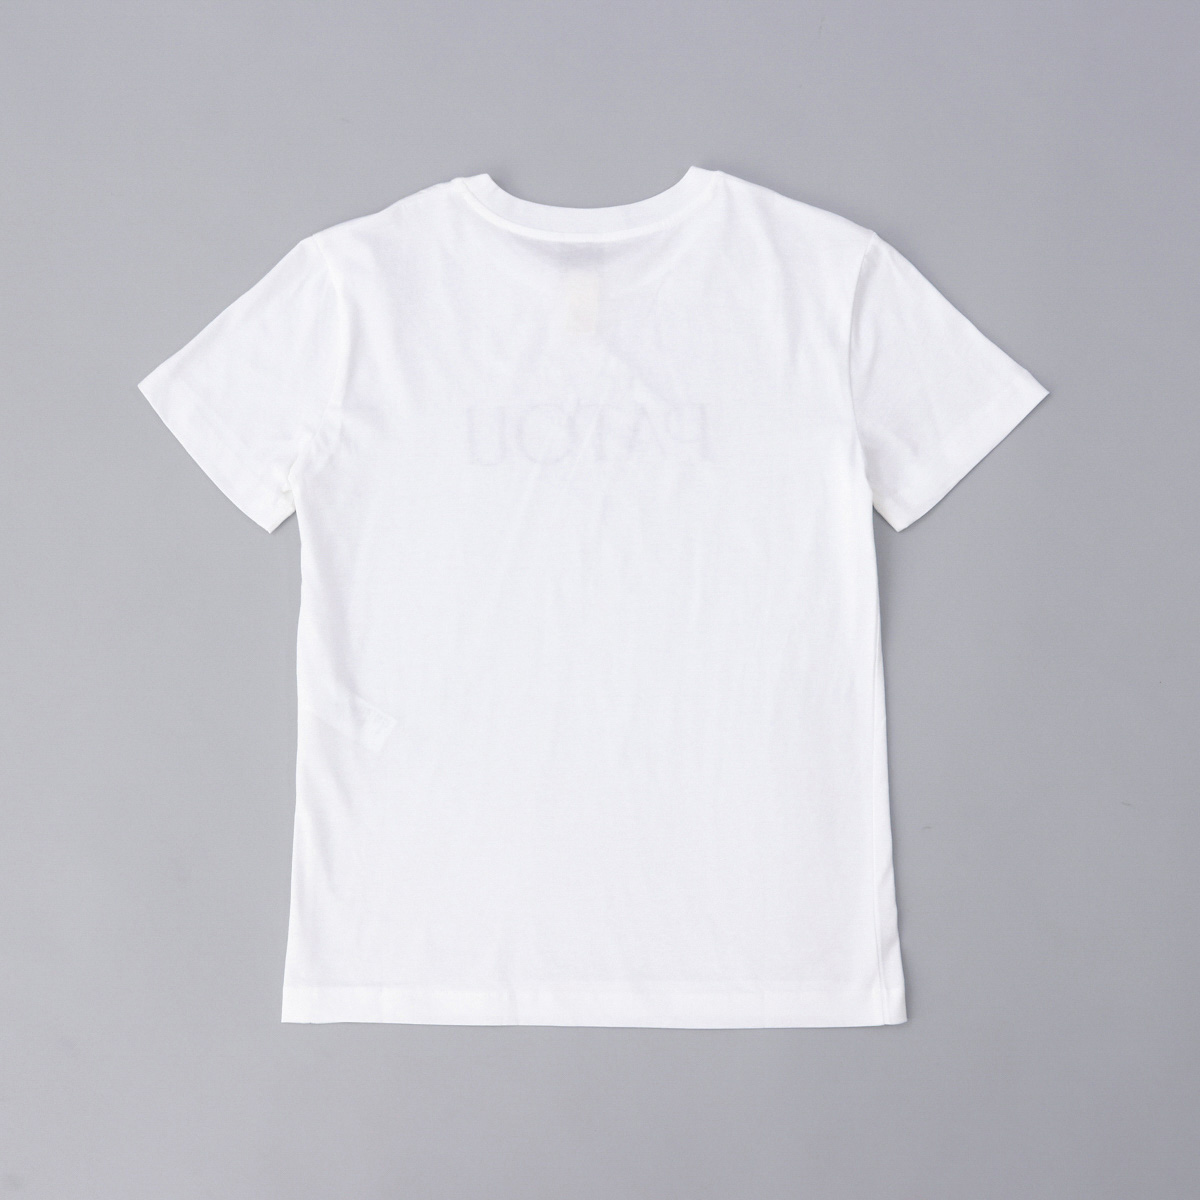 パトゥ PATOU Tシャツ ホワイト JE029 001W JERSEY ロゴ おしゃれ 人気 